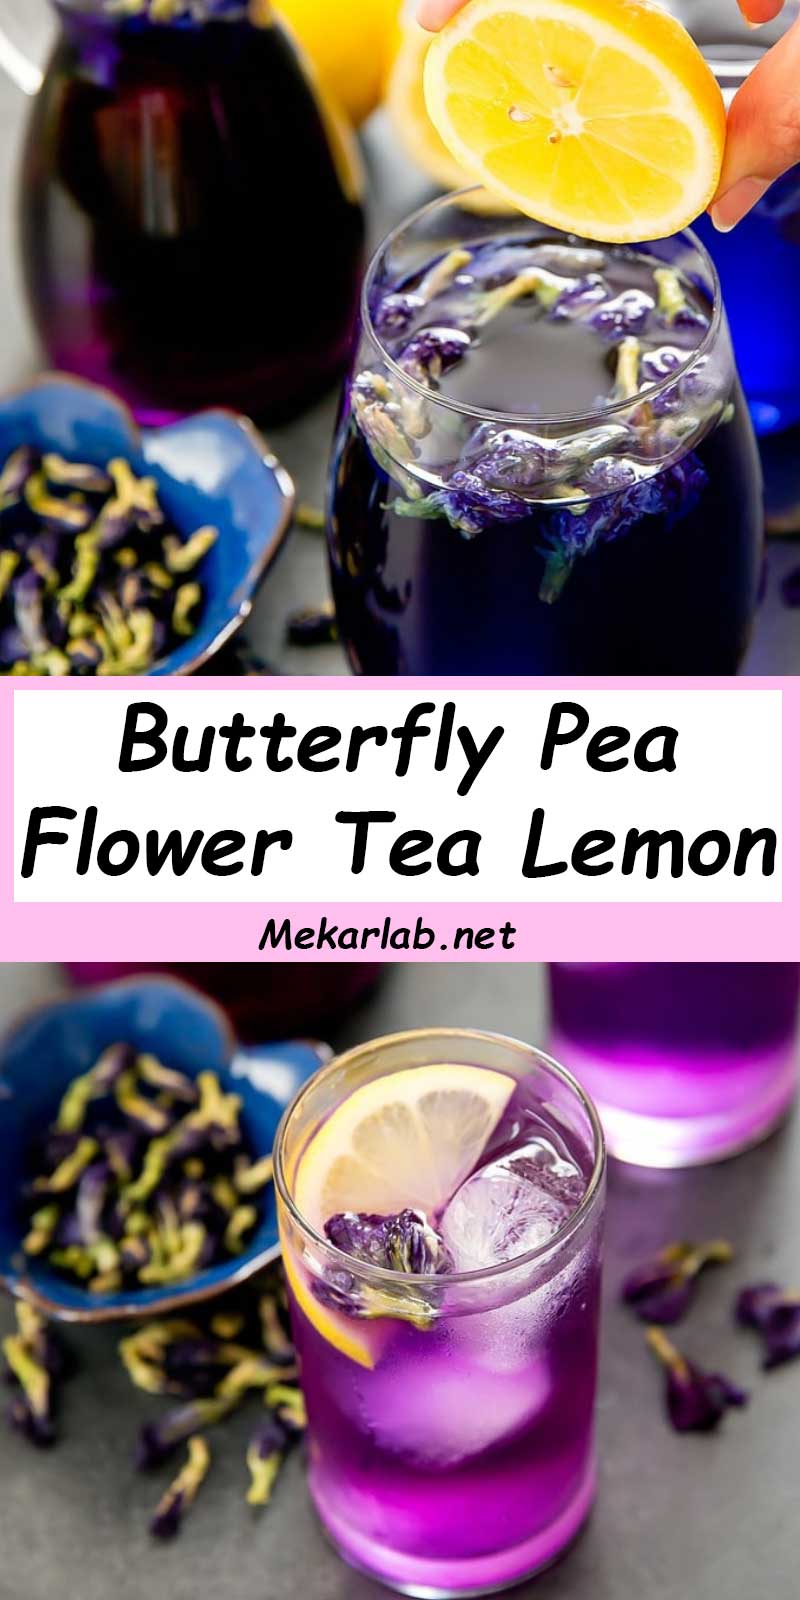 Butterfly Pea Flower Tea Lemon